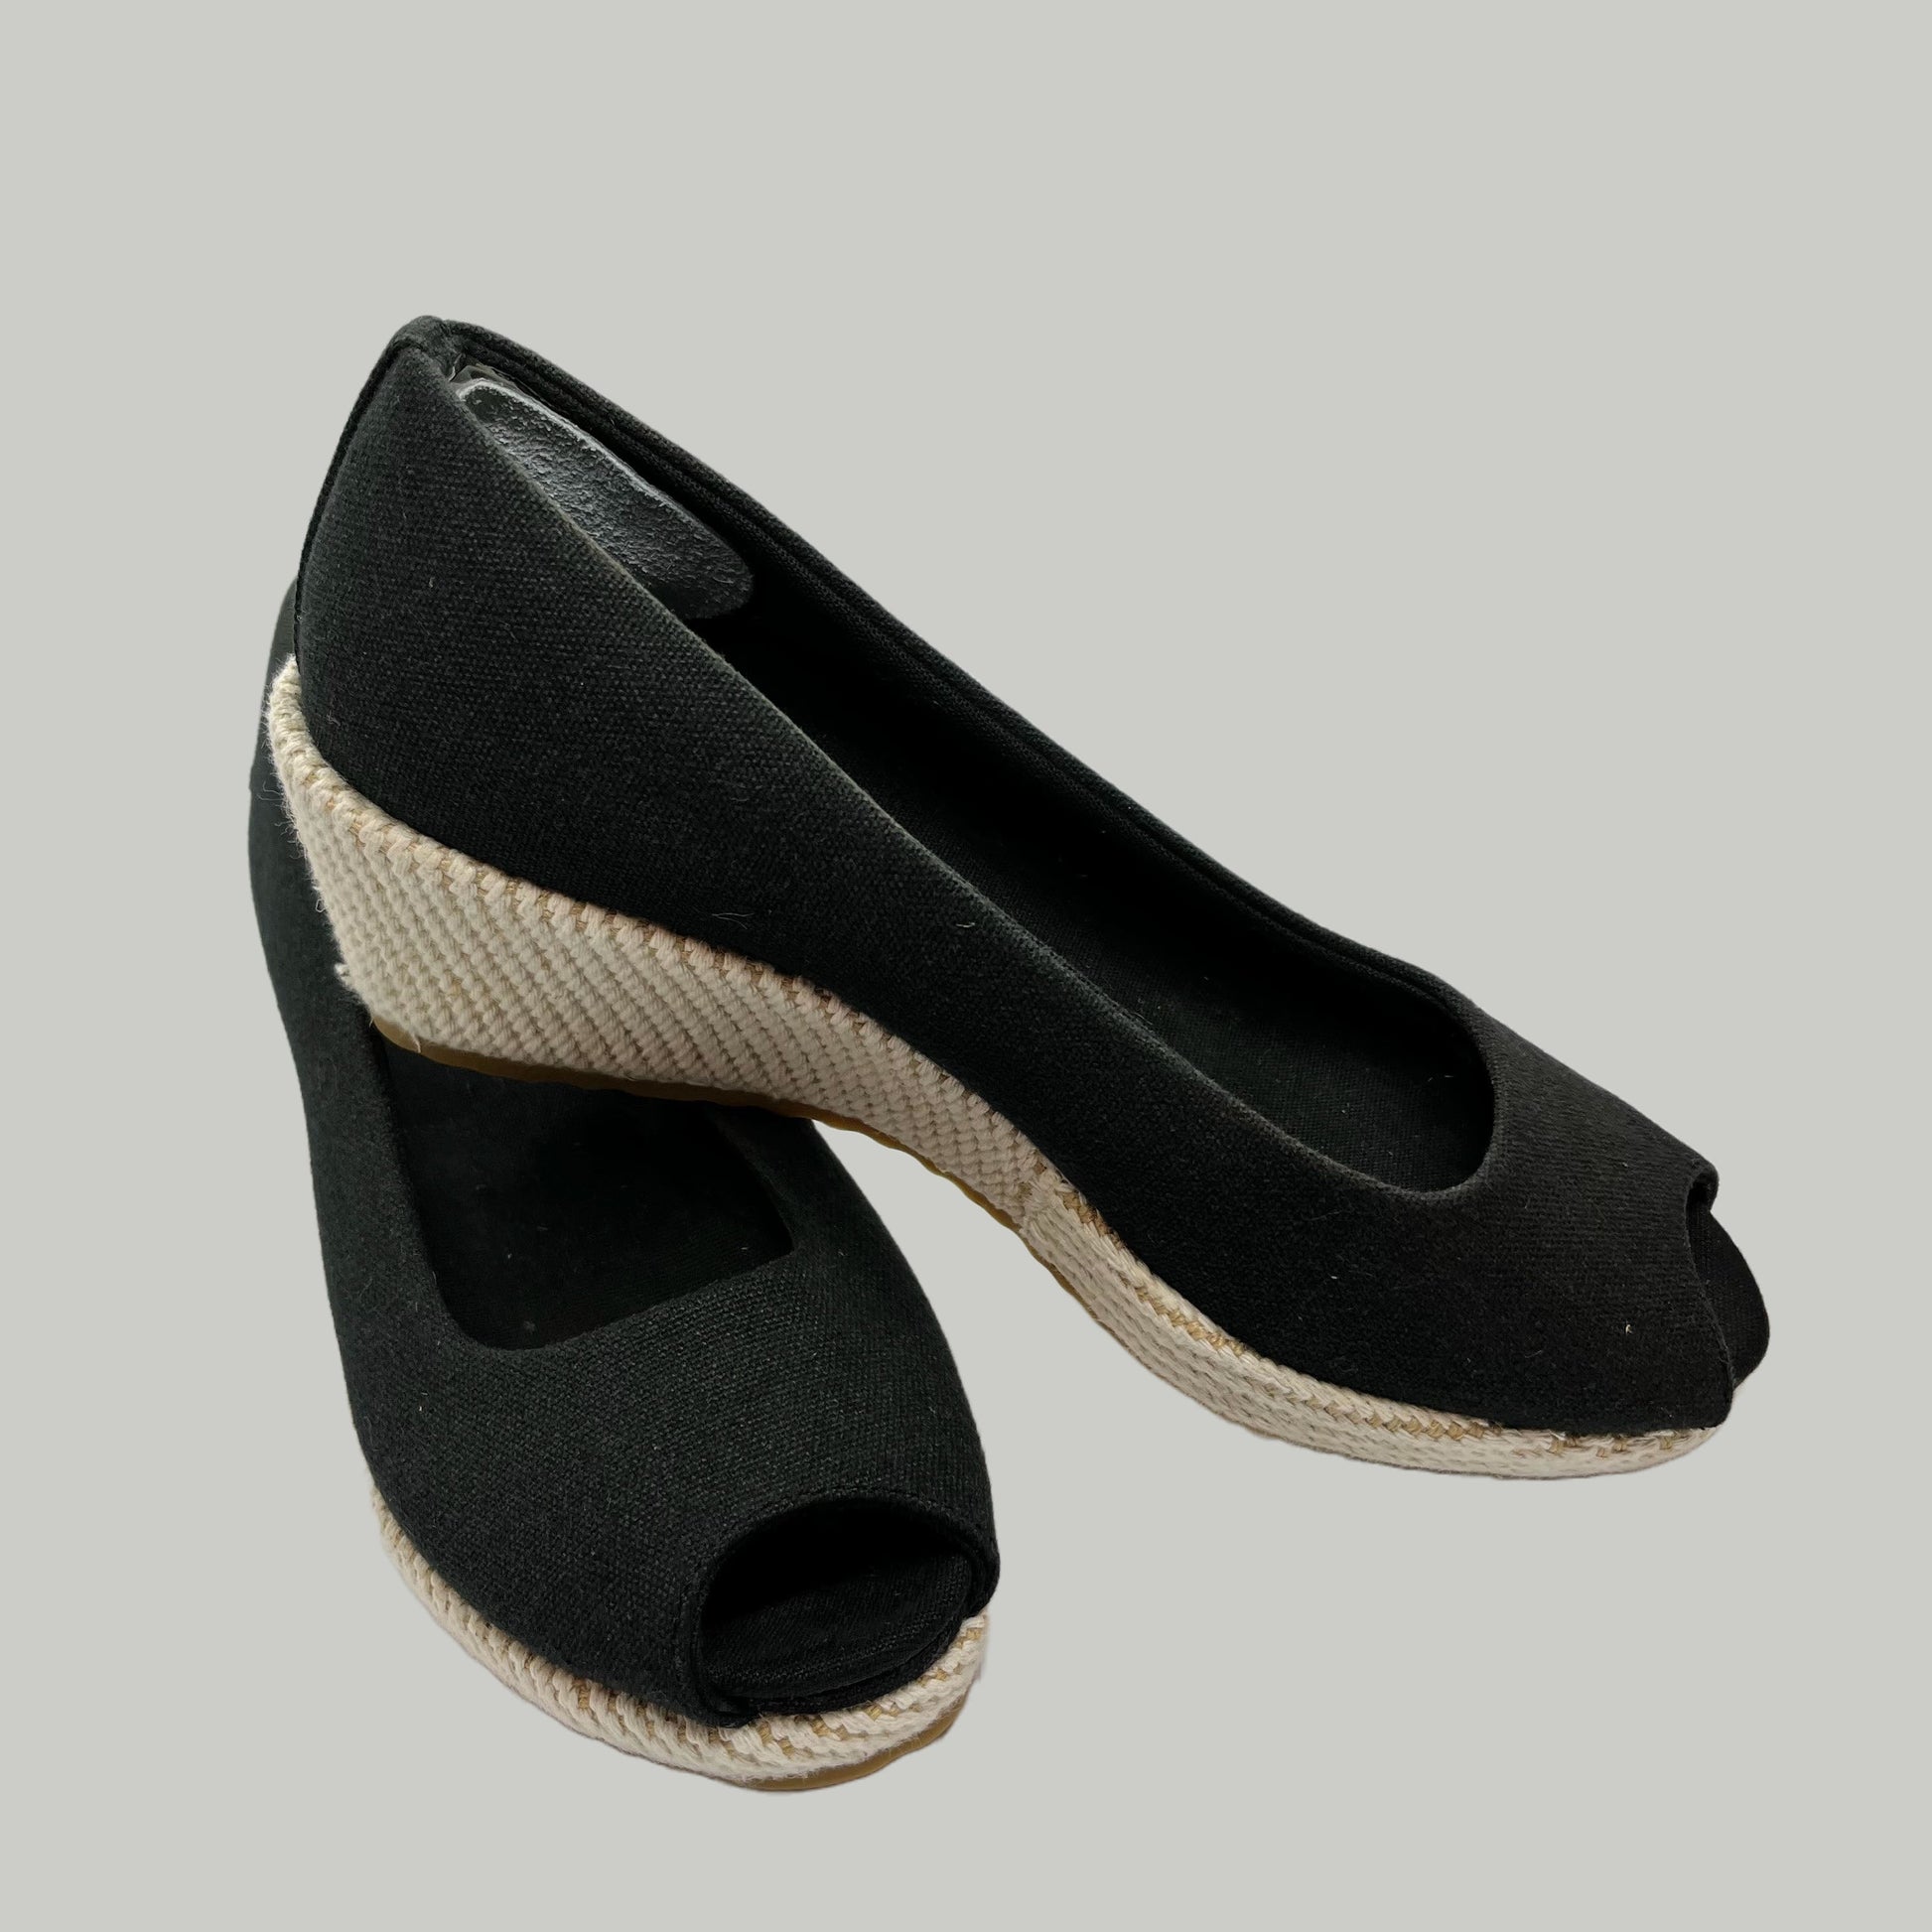 Lacoste - Shoes Size 23Cm